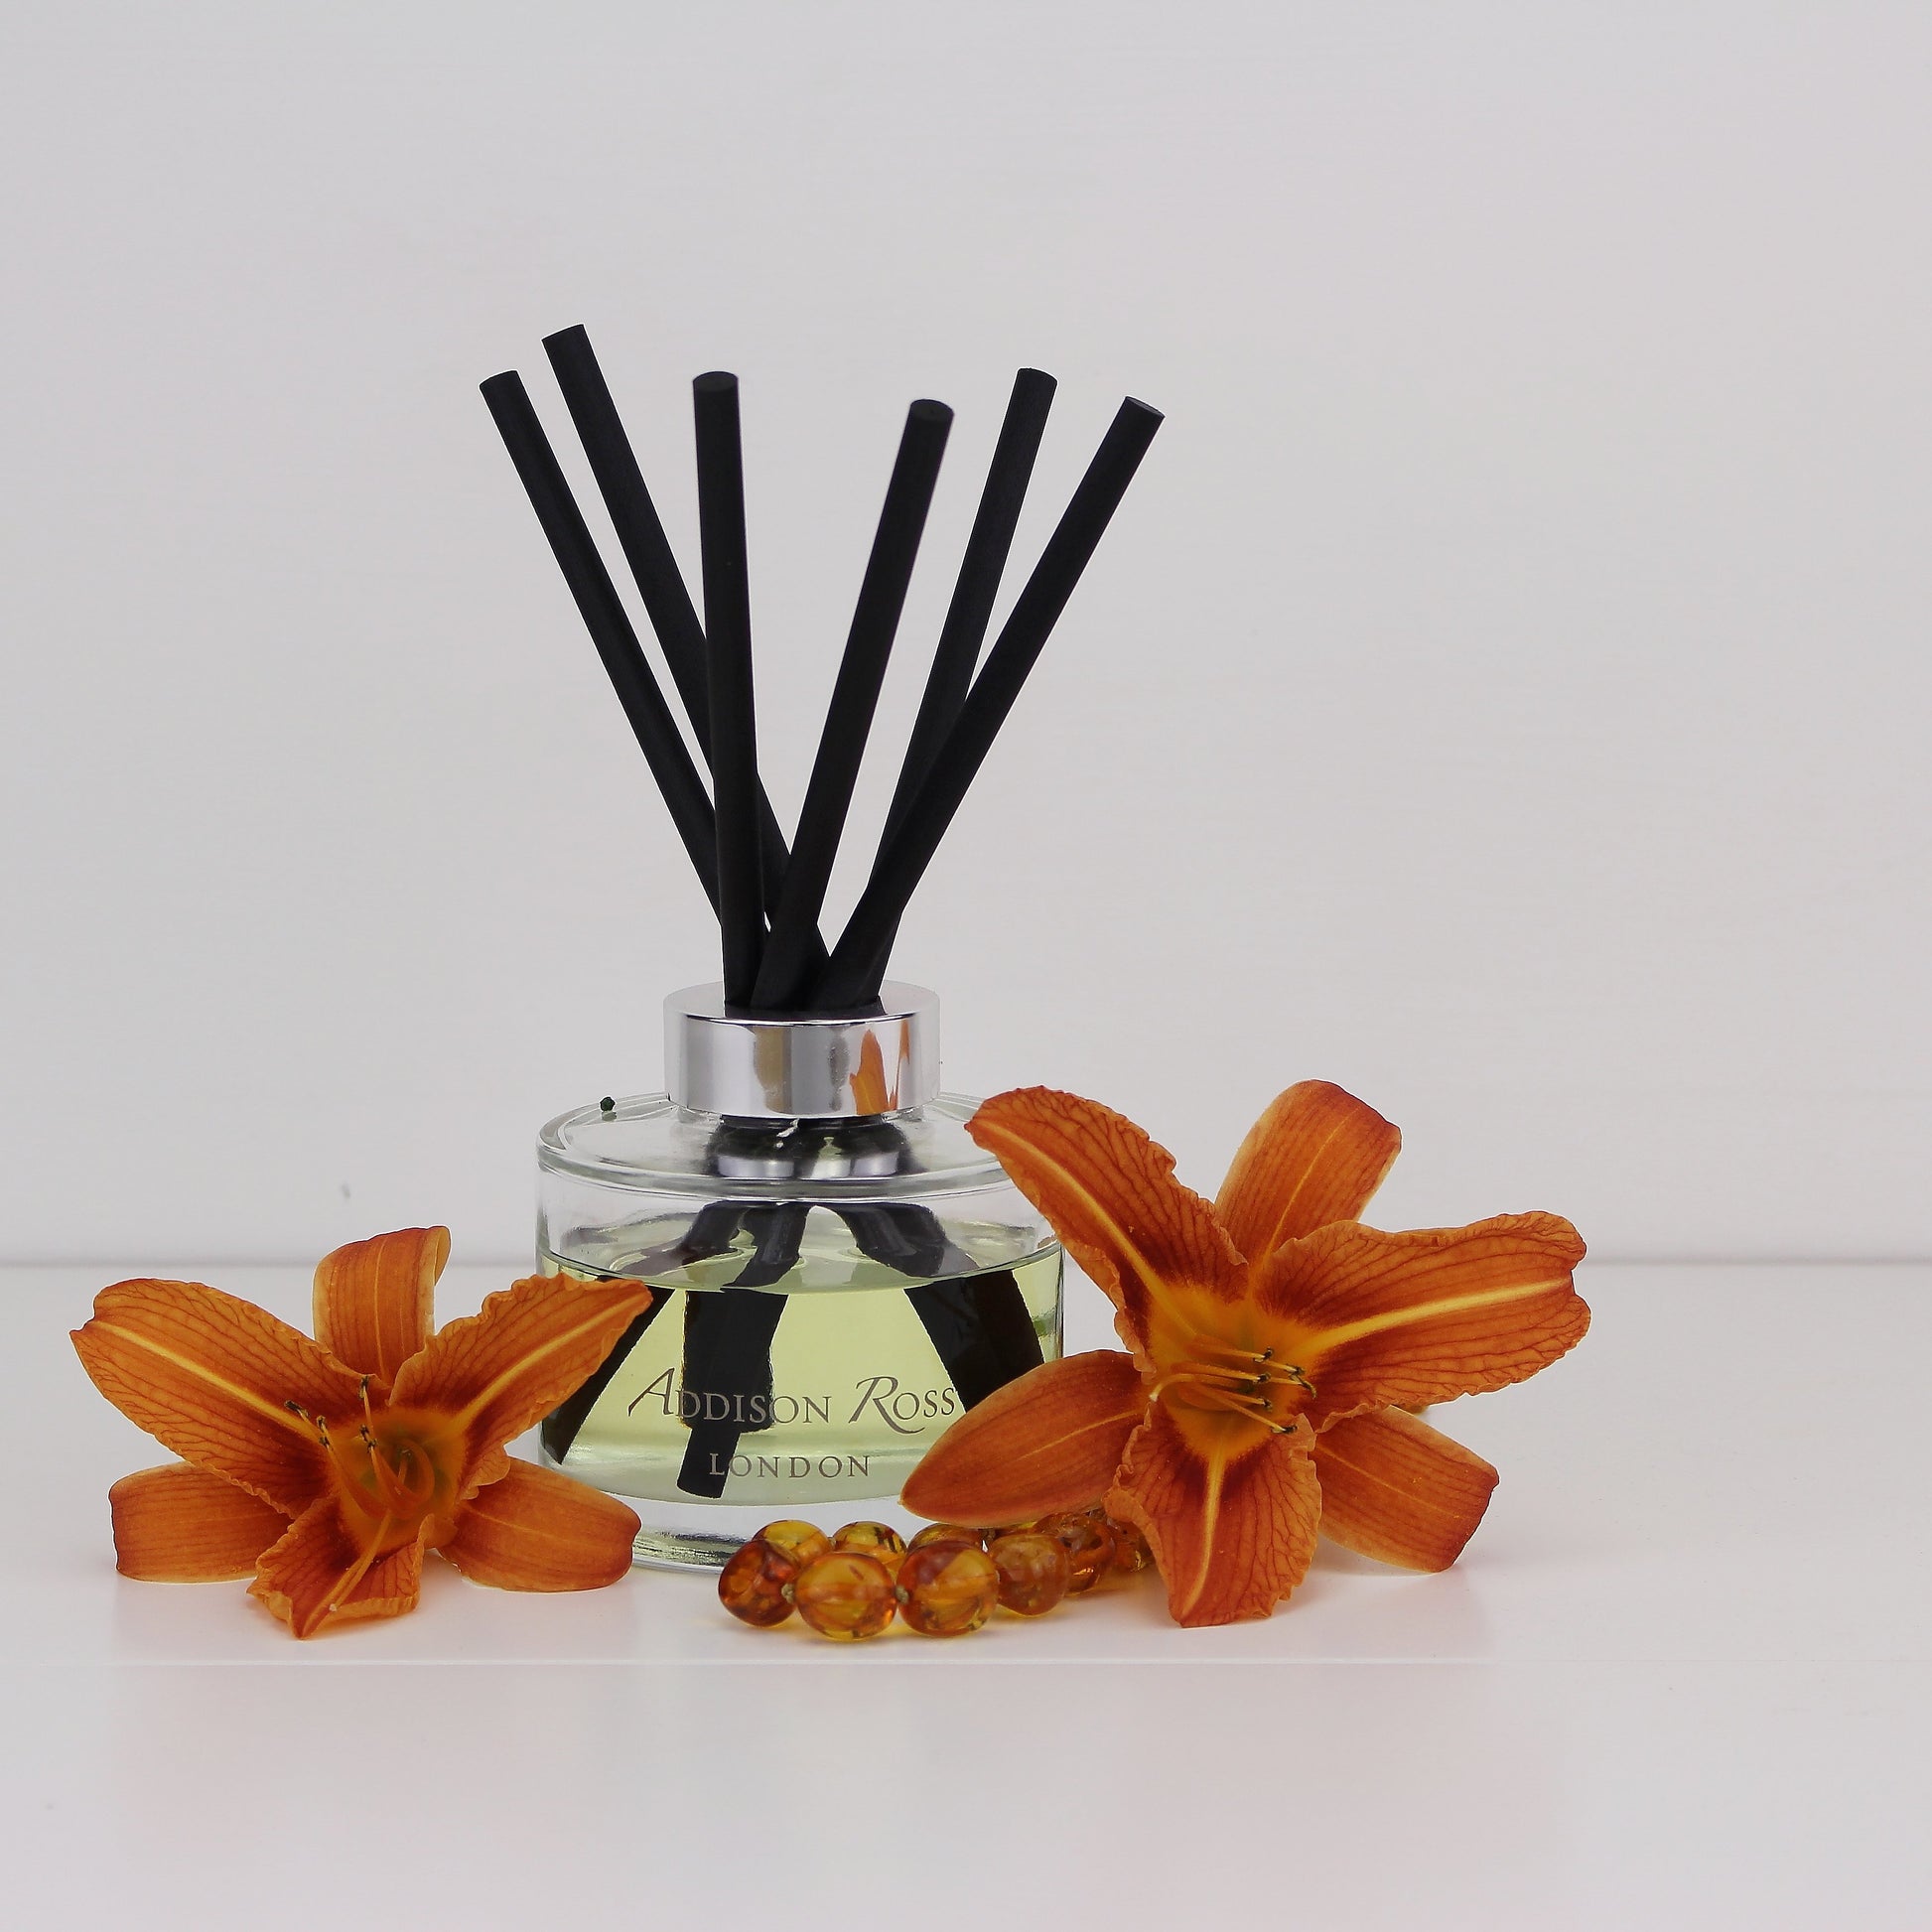 Shanghai Amber Diffuser - Fragrance - Addison Ross